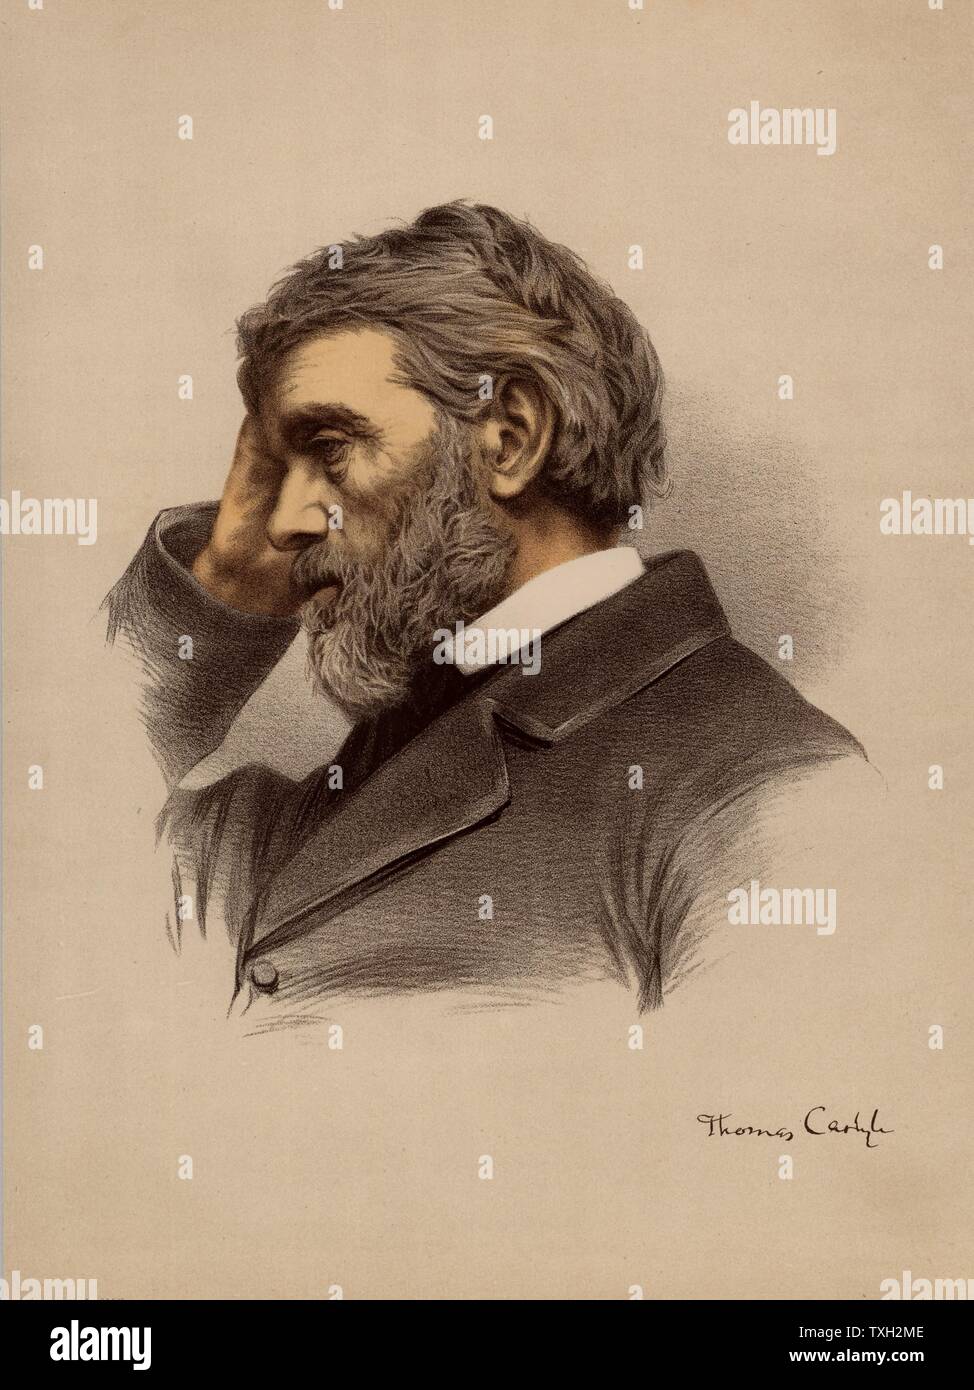 Thomas Carlyle (1795-1881), historien britannique d'origine écossaise et essayiste. À partir de 'Le National Portrait Gallery" (Londres, c1880). Lithographie teintée. Banque D'Images